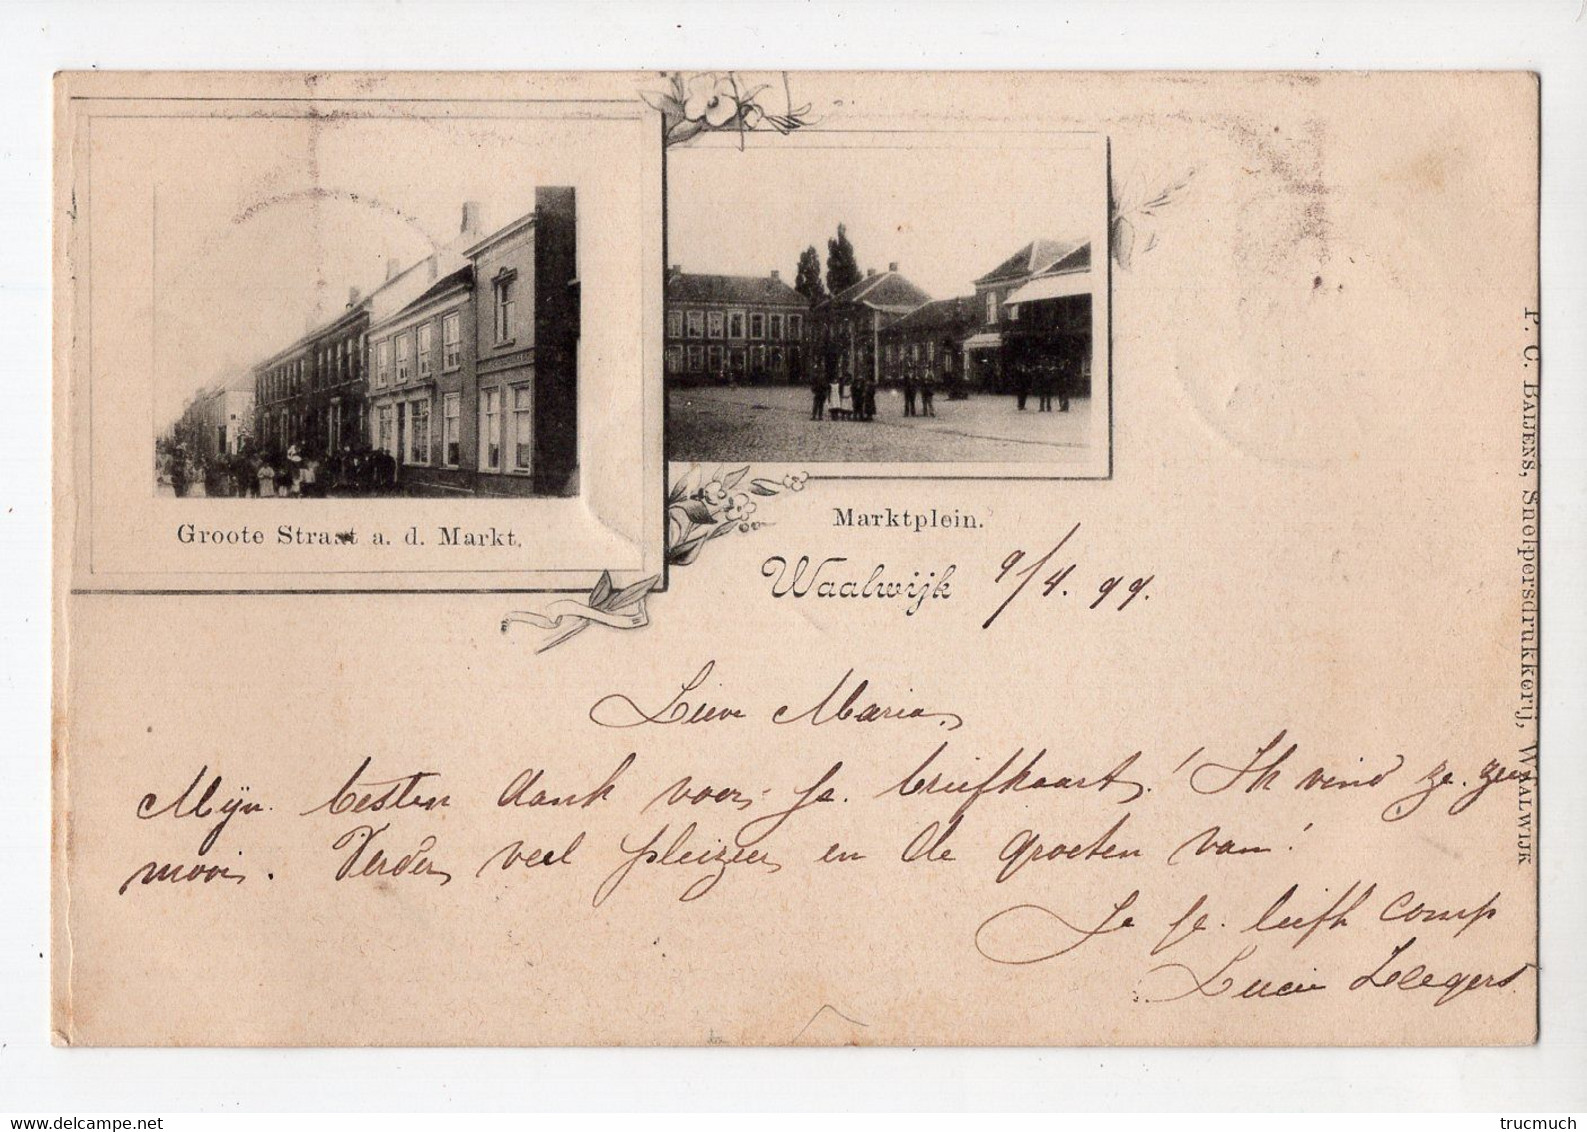 3 - WAALWIJK - Groote Straat A. D. Markt - Marktplein  *1899* - Waalwijk